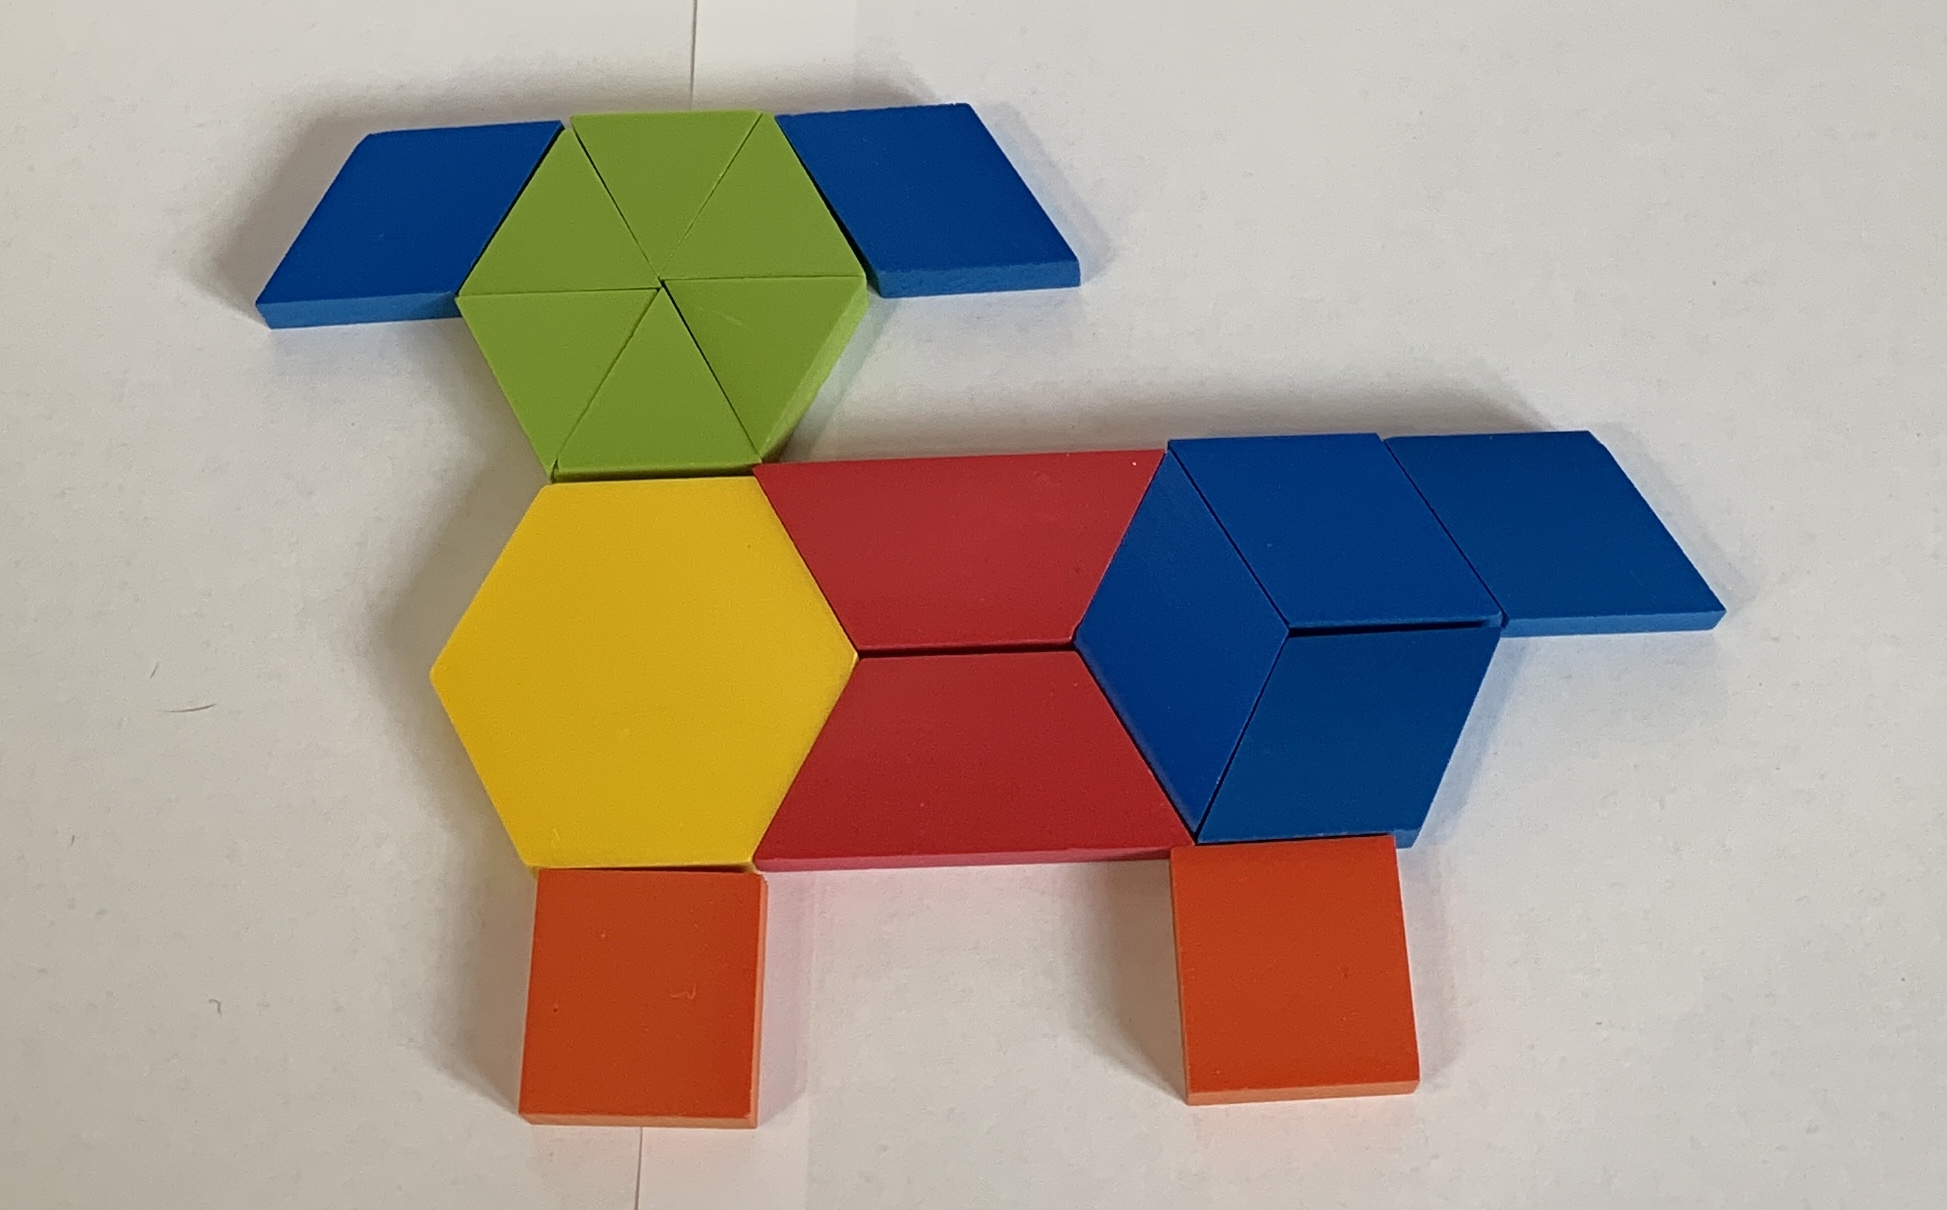 Pattern block design, dog. Yellow, 1. Red, 2. Blue, 6. Orange, 2. Green, 6.